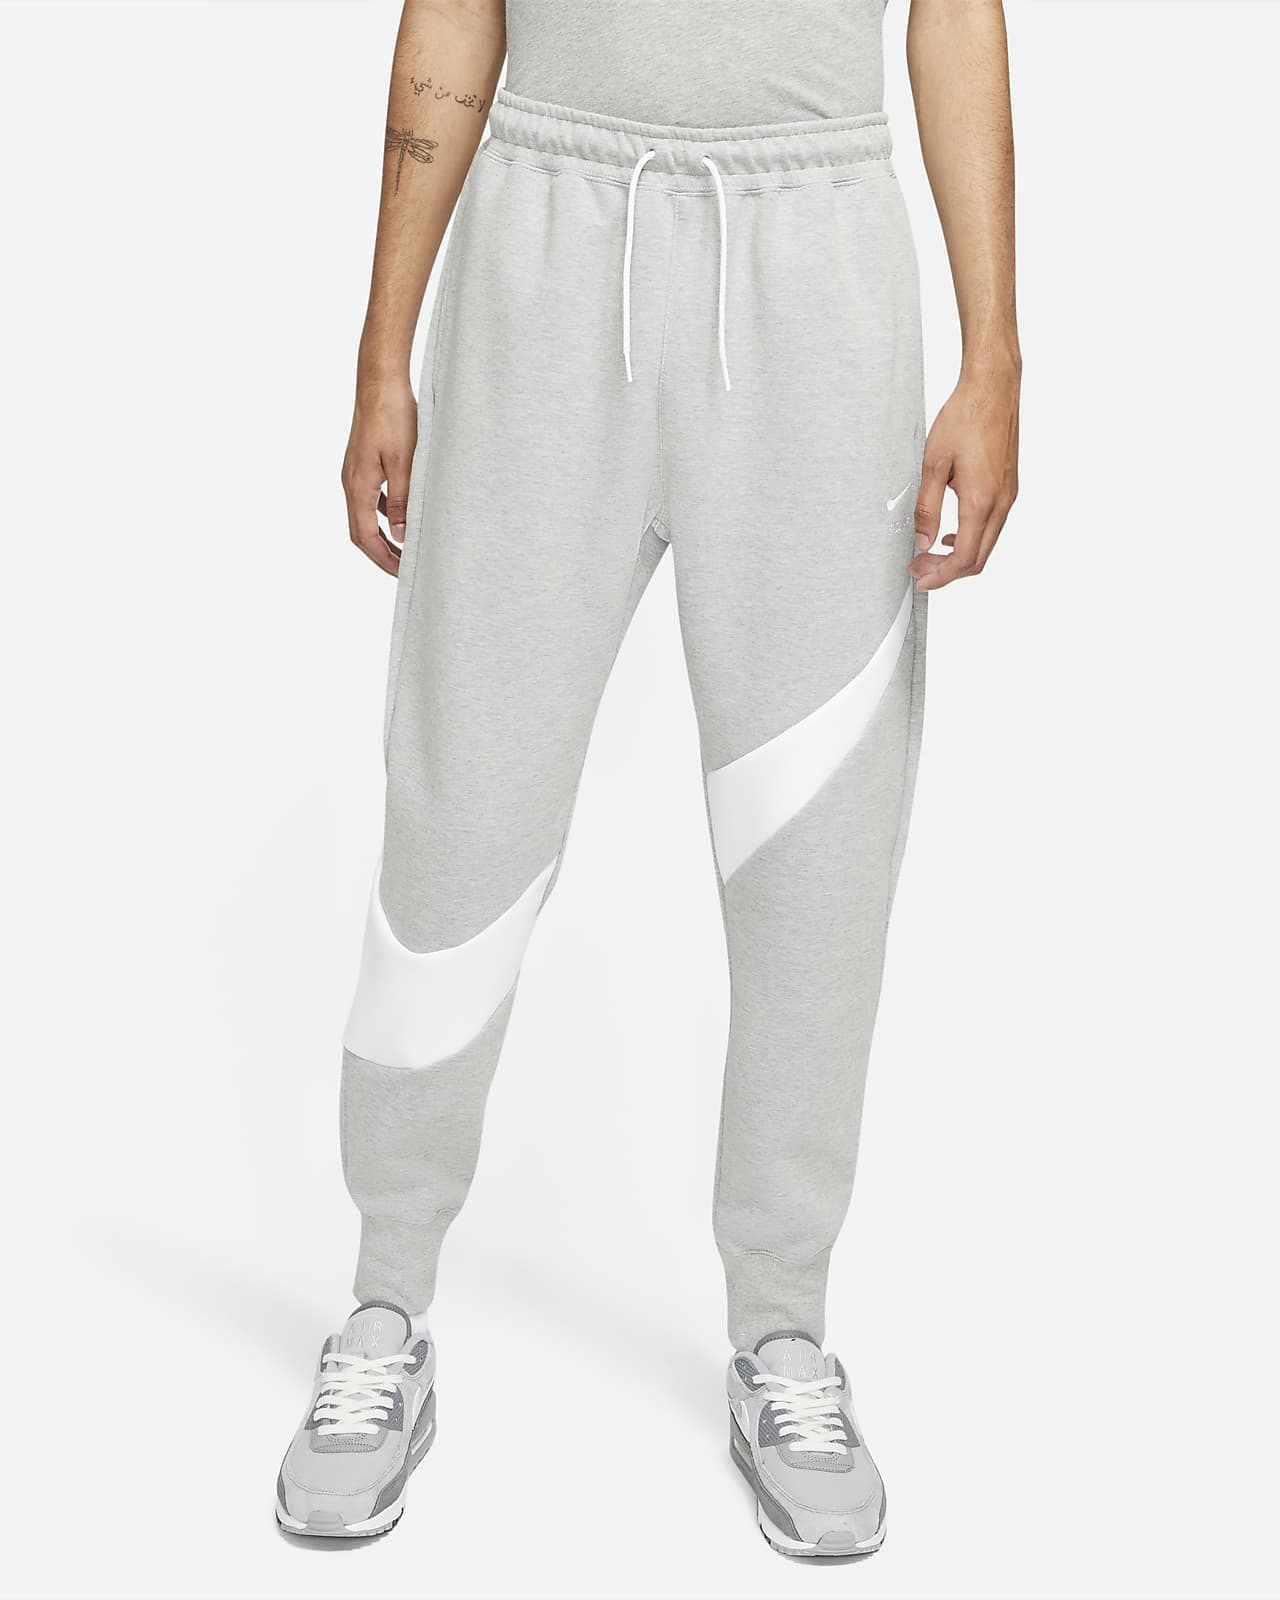 Nike Sportswear Swoosh Tech Fleece Men's Trousers